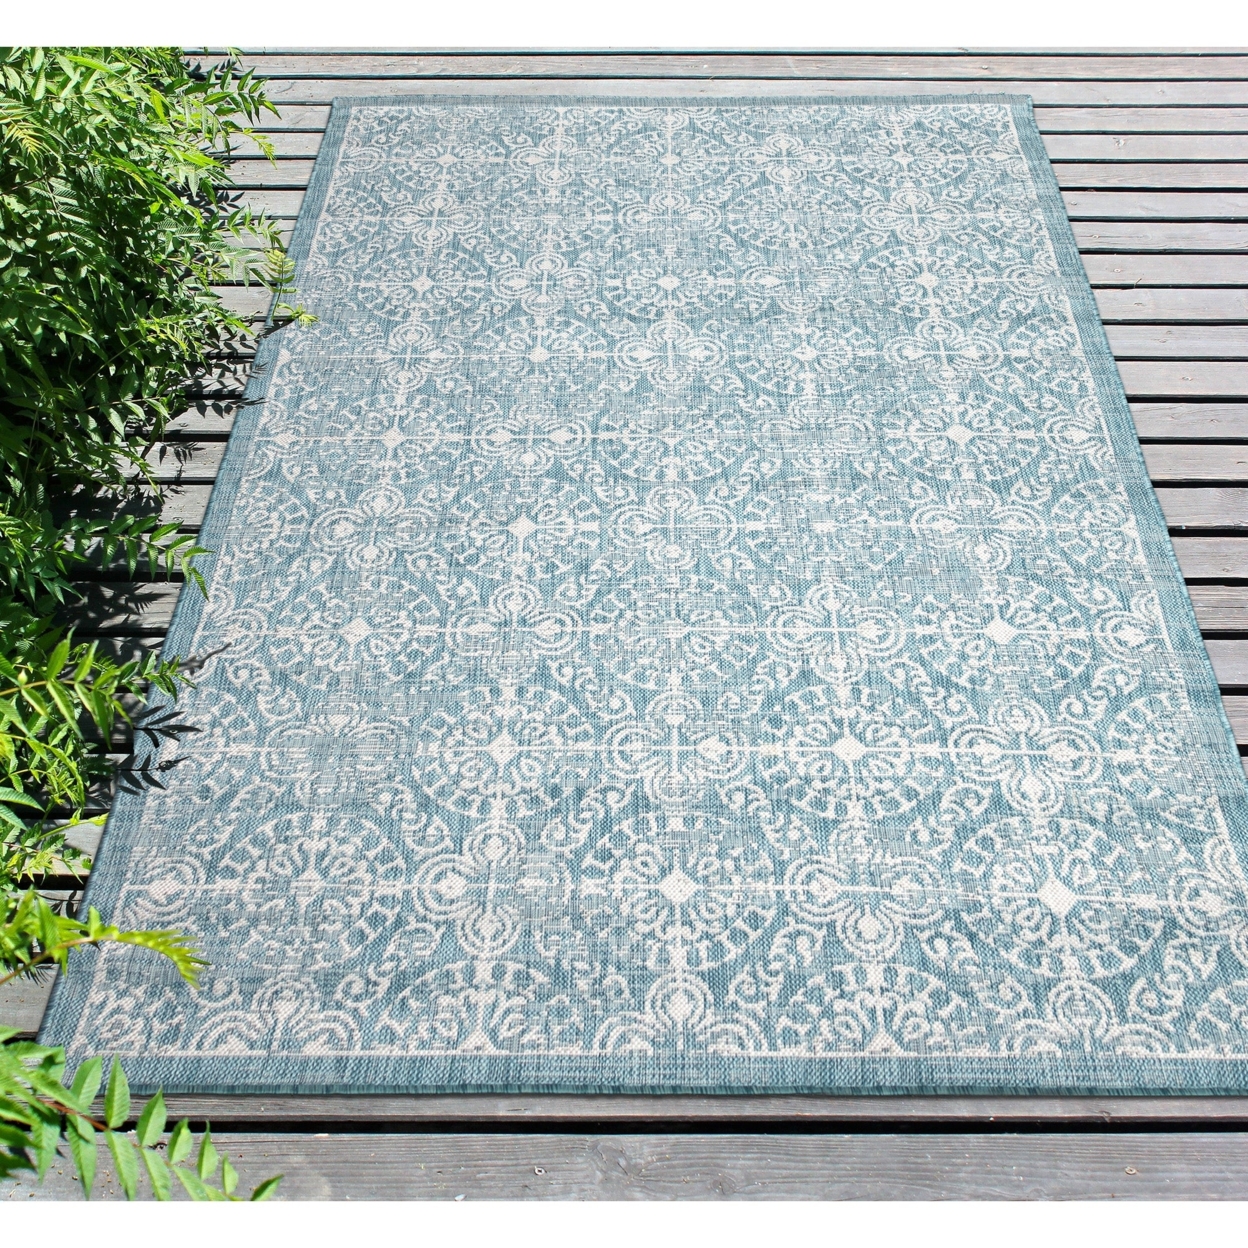 Liora Manne Carmel Antique Tile Indoor Outdoor Area Rug Aqua - 6'6 X 9'3